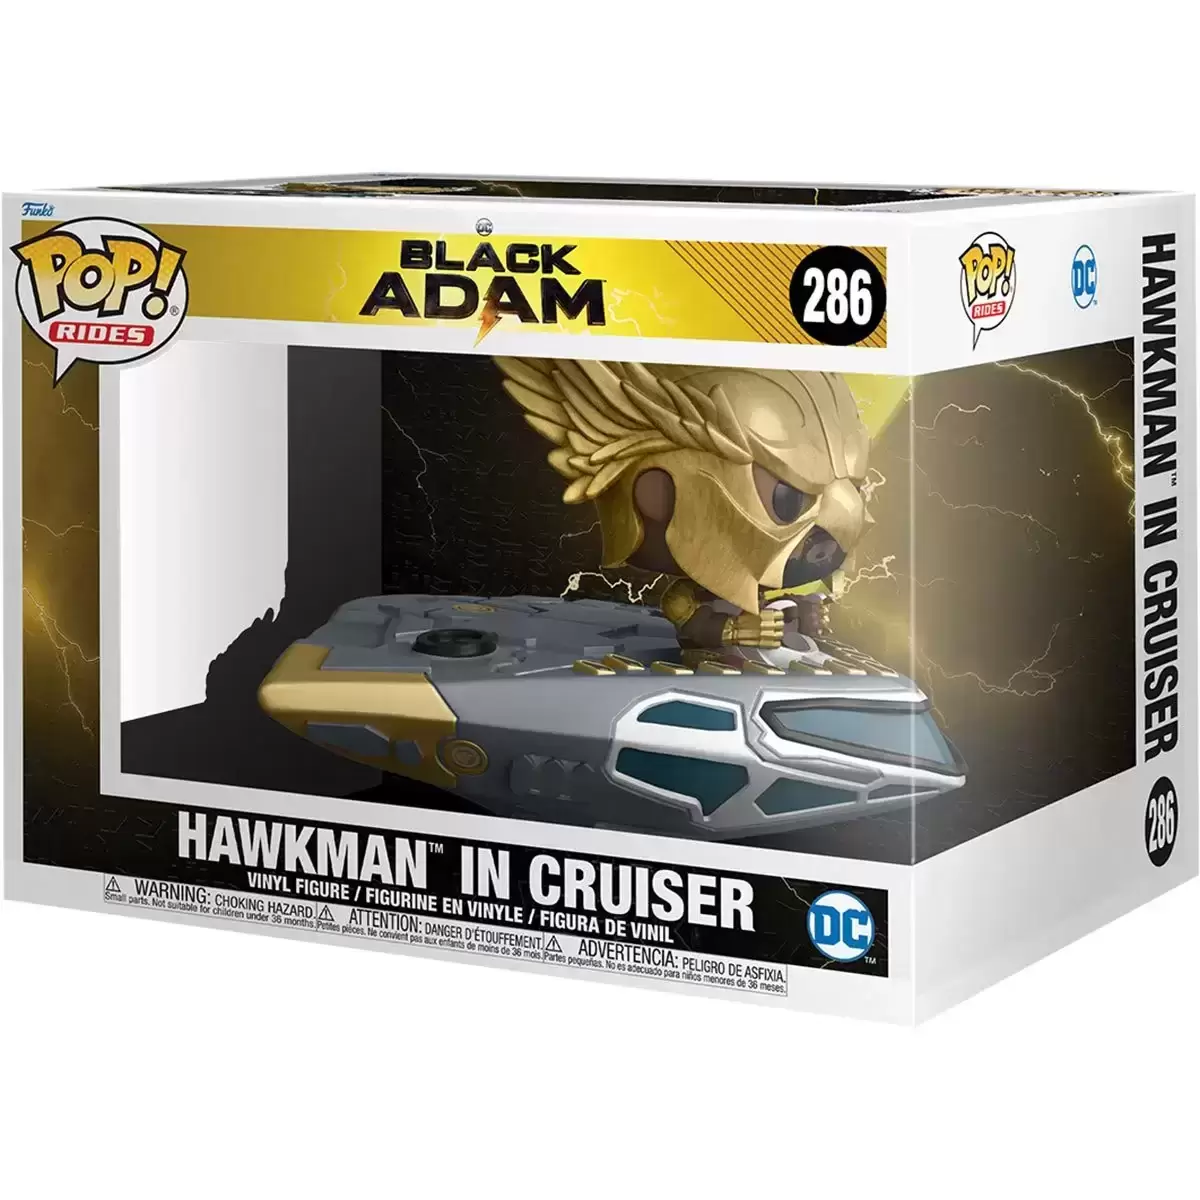 POP! Rides - Black Adam - Hawkman in Cruiser